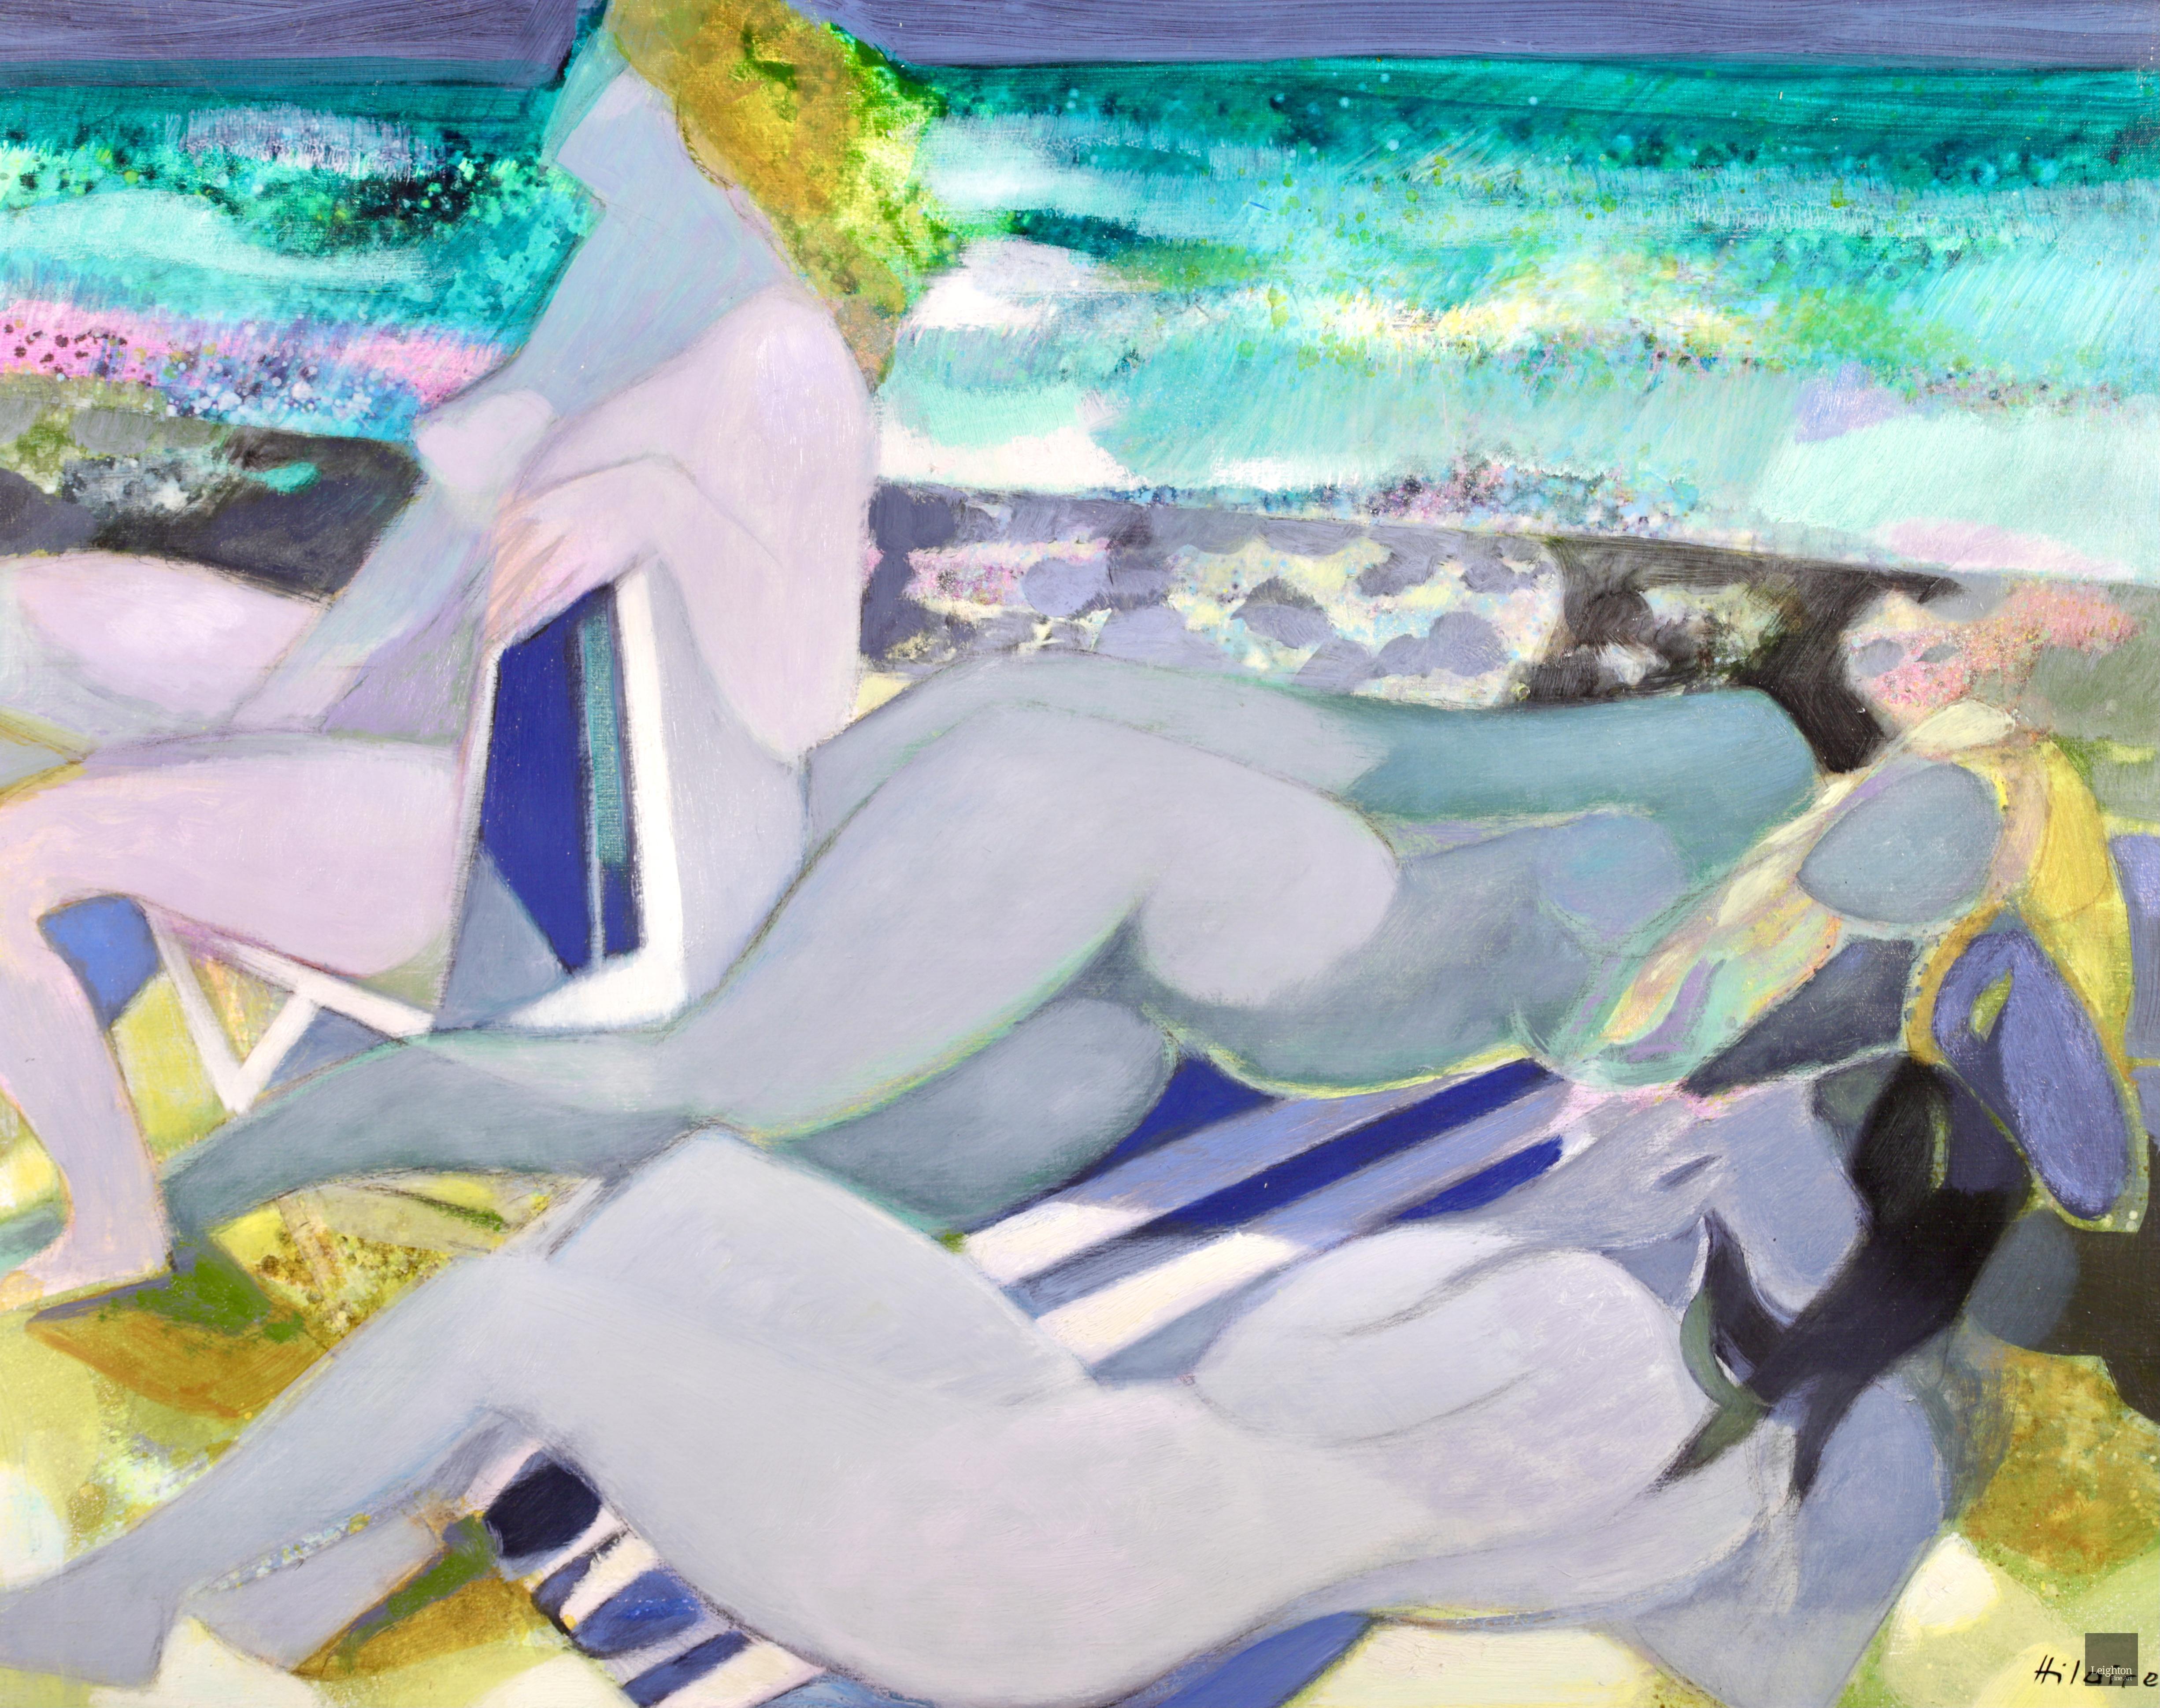 Signiertes Öl auf Leinwand mit Figuren in einer Landschaft des französischen kubistischen Malers Camile Hilaire. Das Werk zeigt drei nackte Badende - zwei blonde und eine brünette -, die auf dem gelben Sand eines Strandes in Trouville, Frankreich,